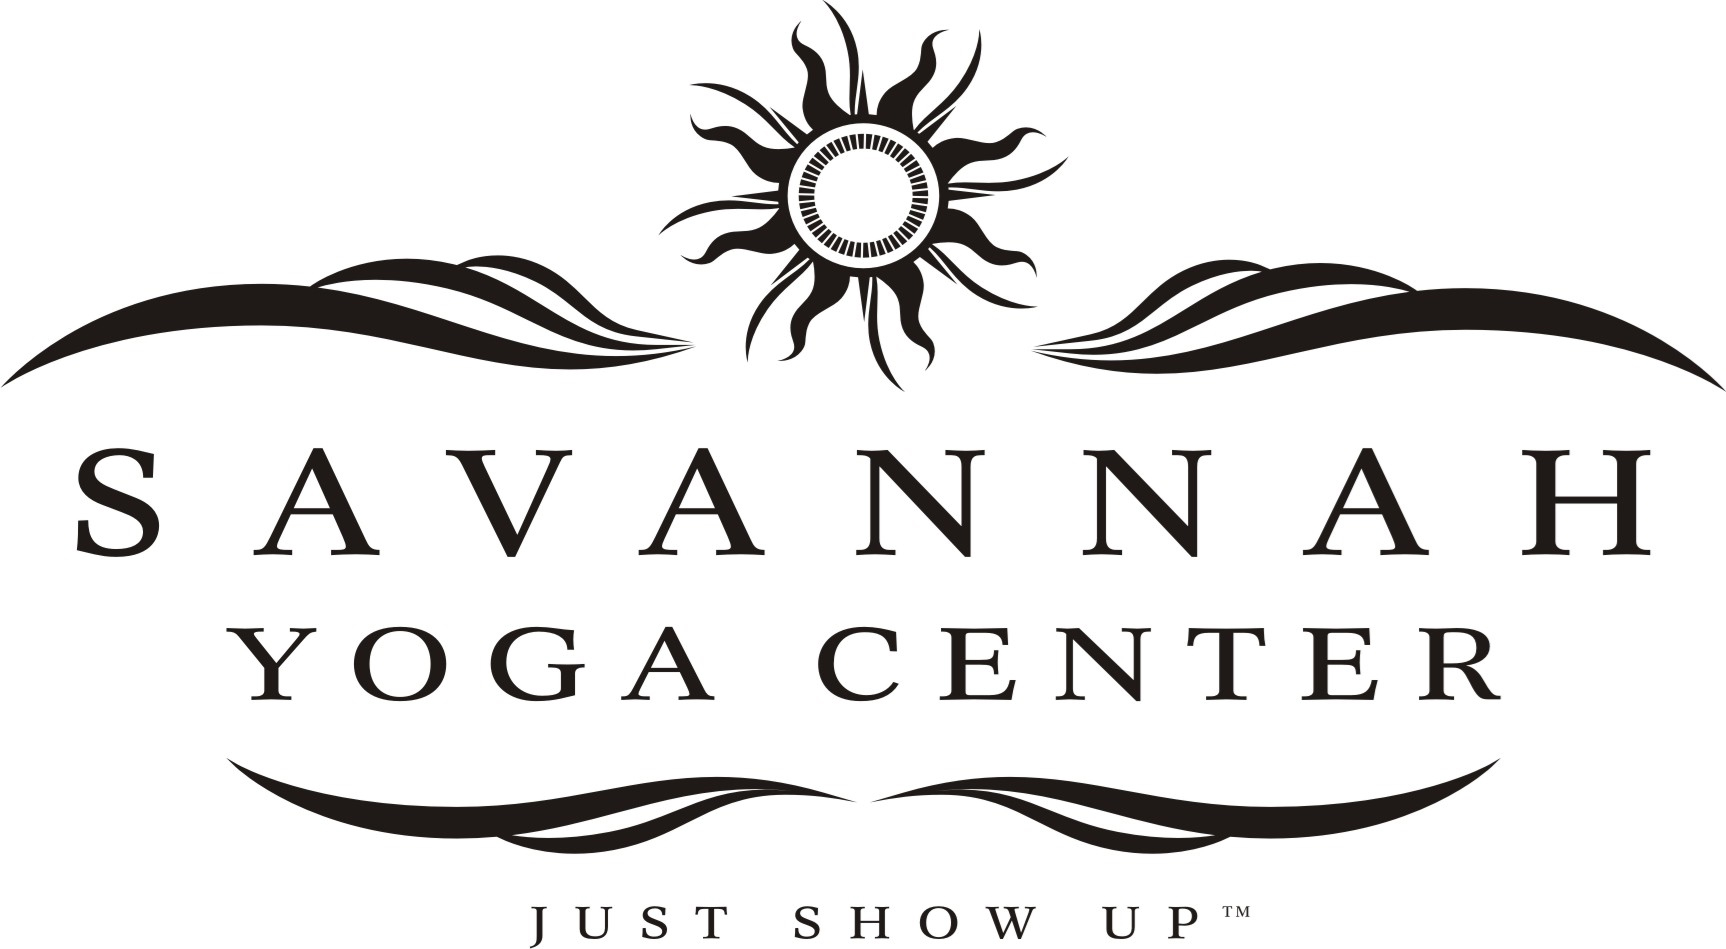 Savannah Yoga